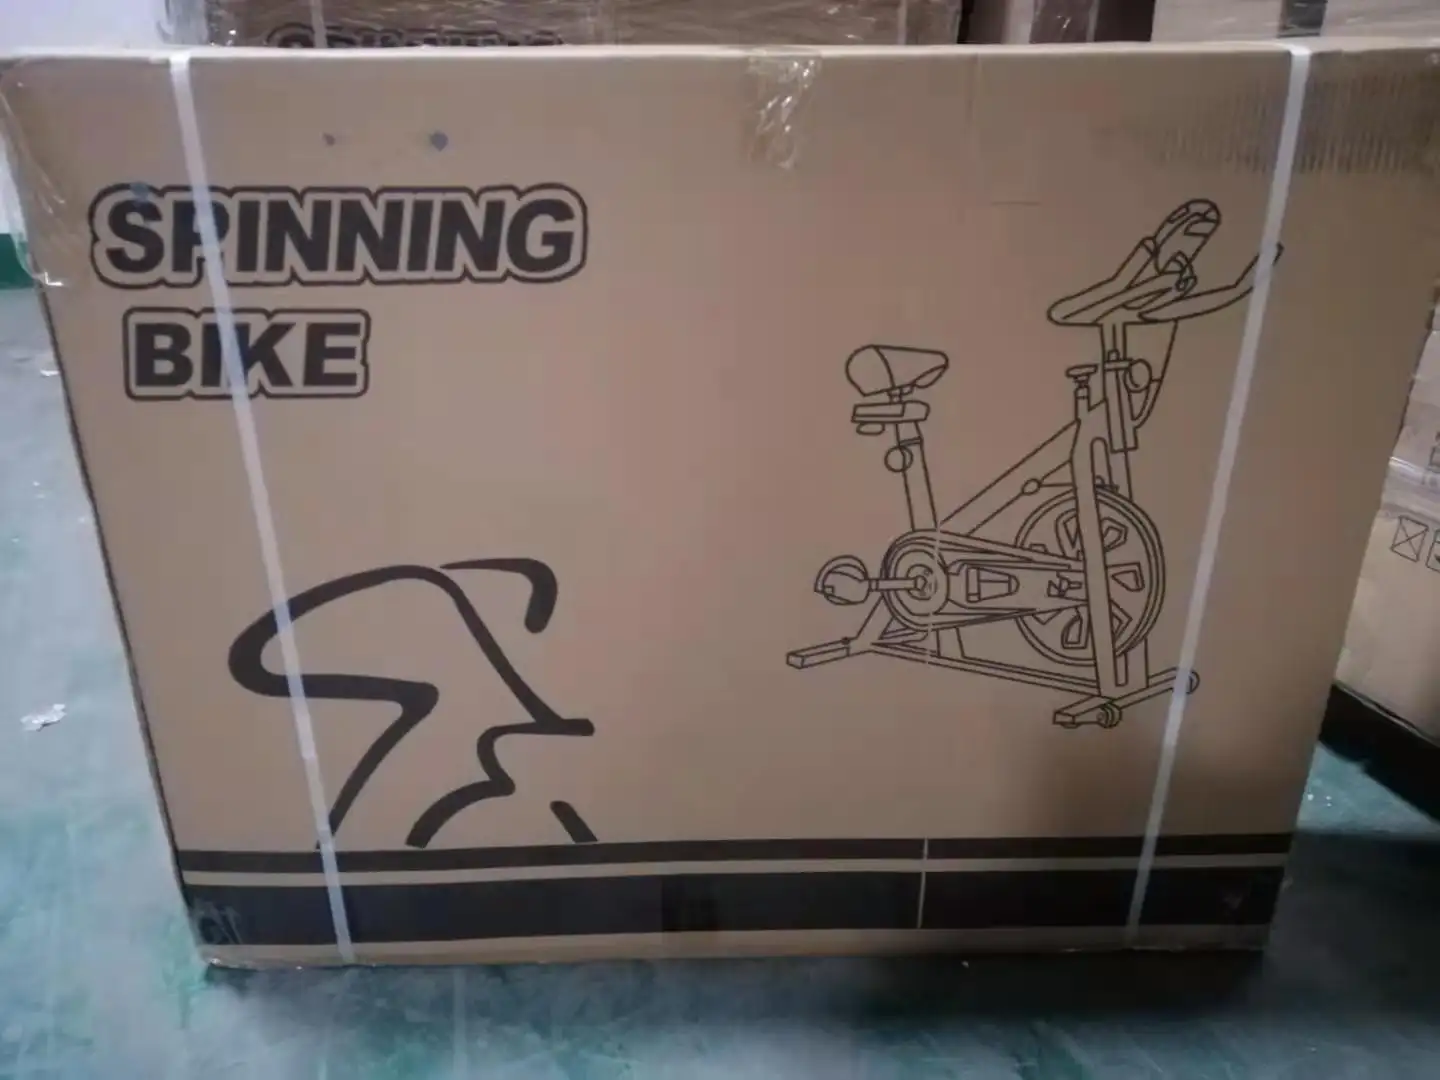 Venda quente china fábrica girando bicicleta construção do corpo girando exercício interior fit bicicleta